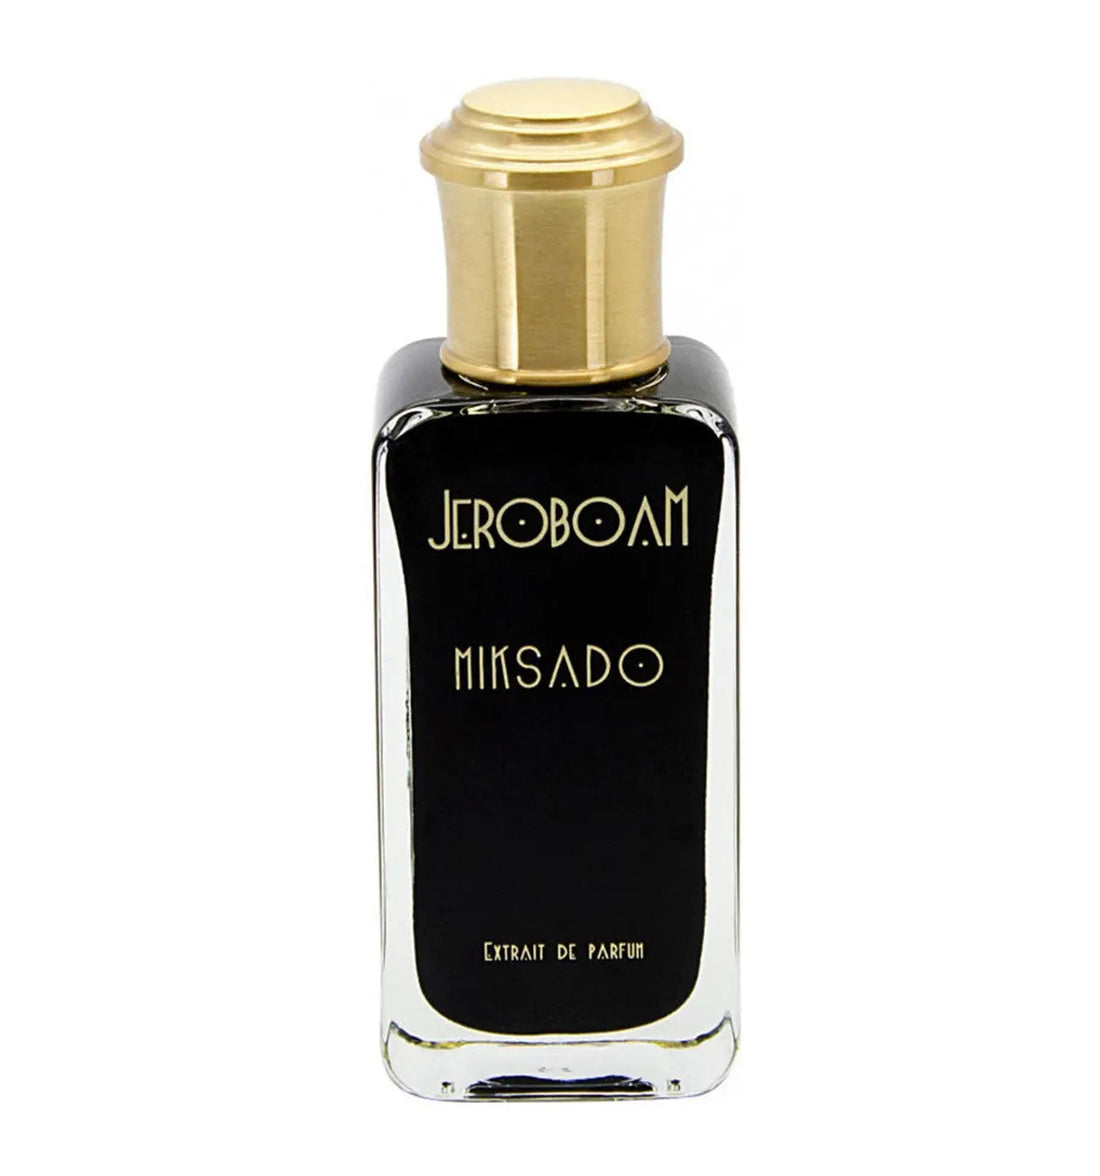 Extracto de perfume Jeroboam MIKSADO - 30 ml